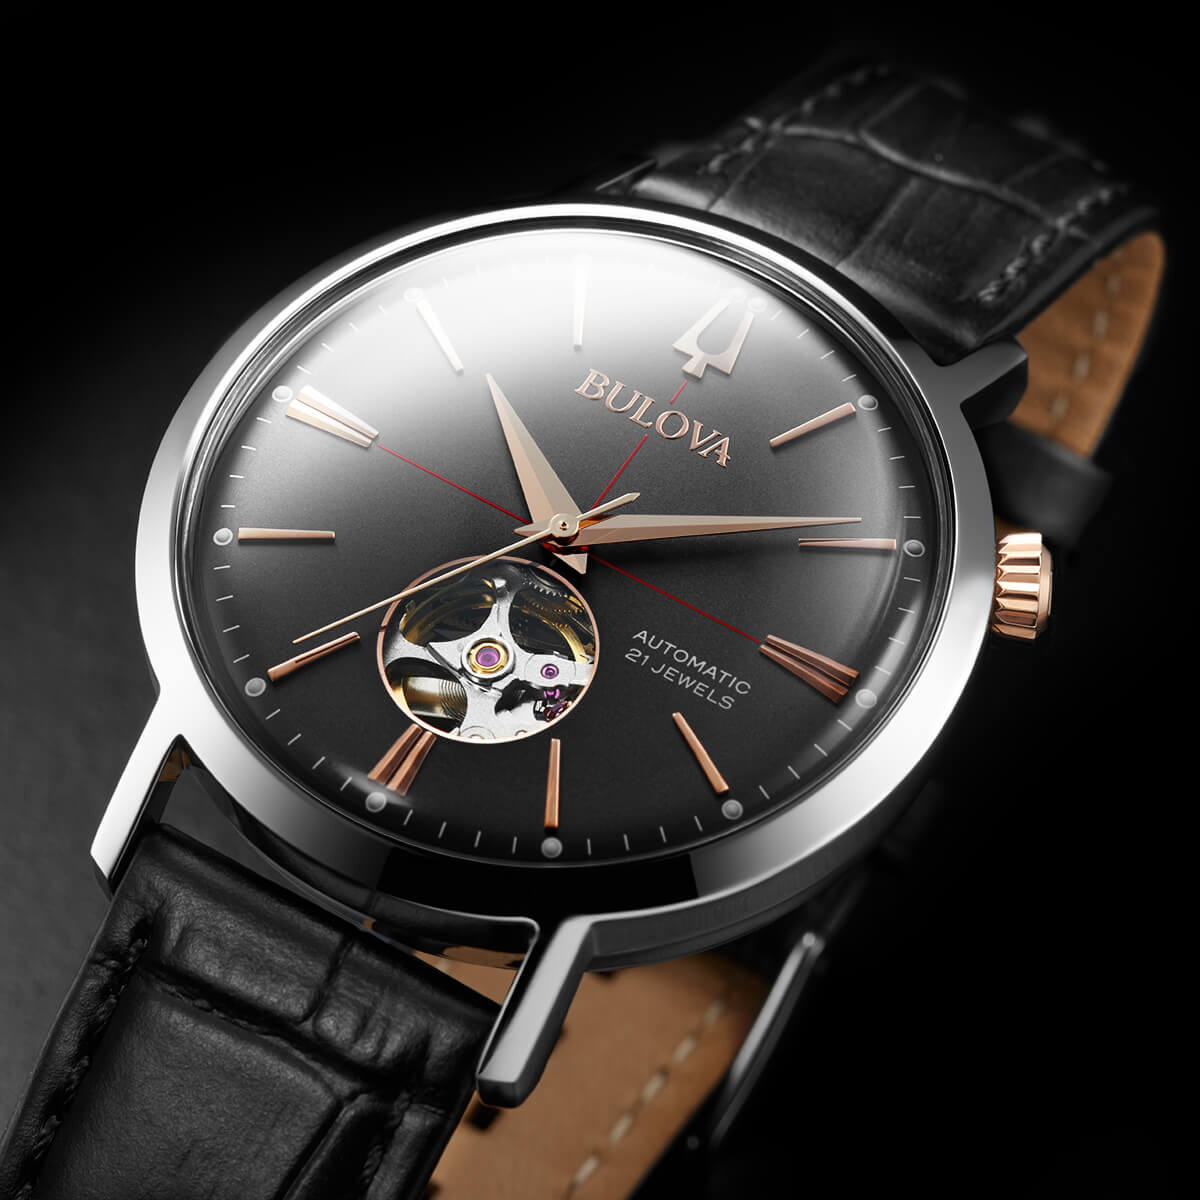 Relógio com uma correia metálica cinzenta e um mostrador metálico negro da coleção Aerojet dos relógios Bulova inspirado no design vintage típico dos anos 60.